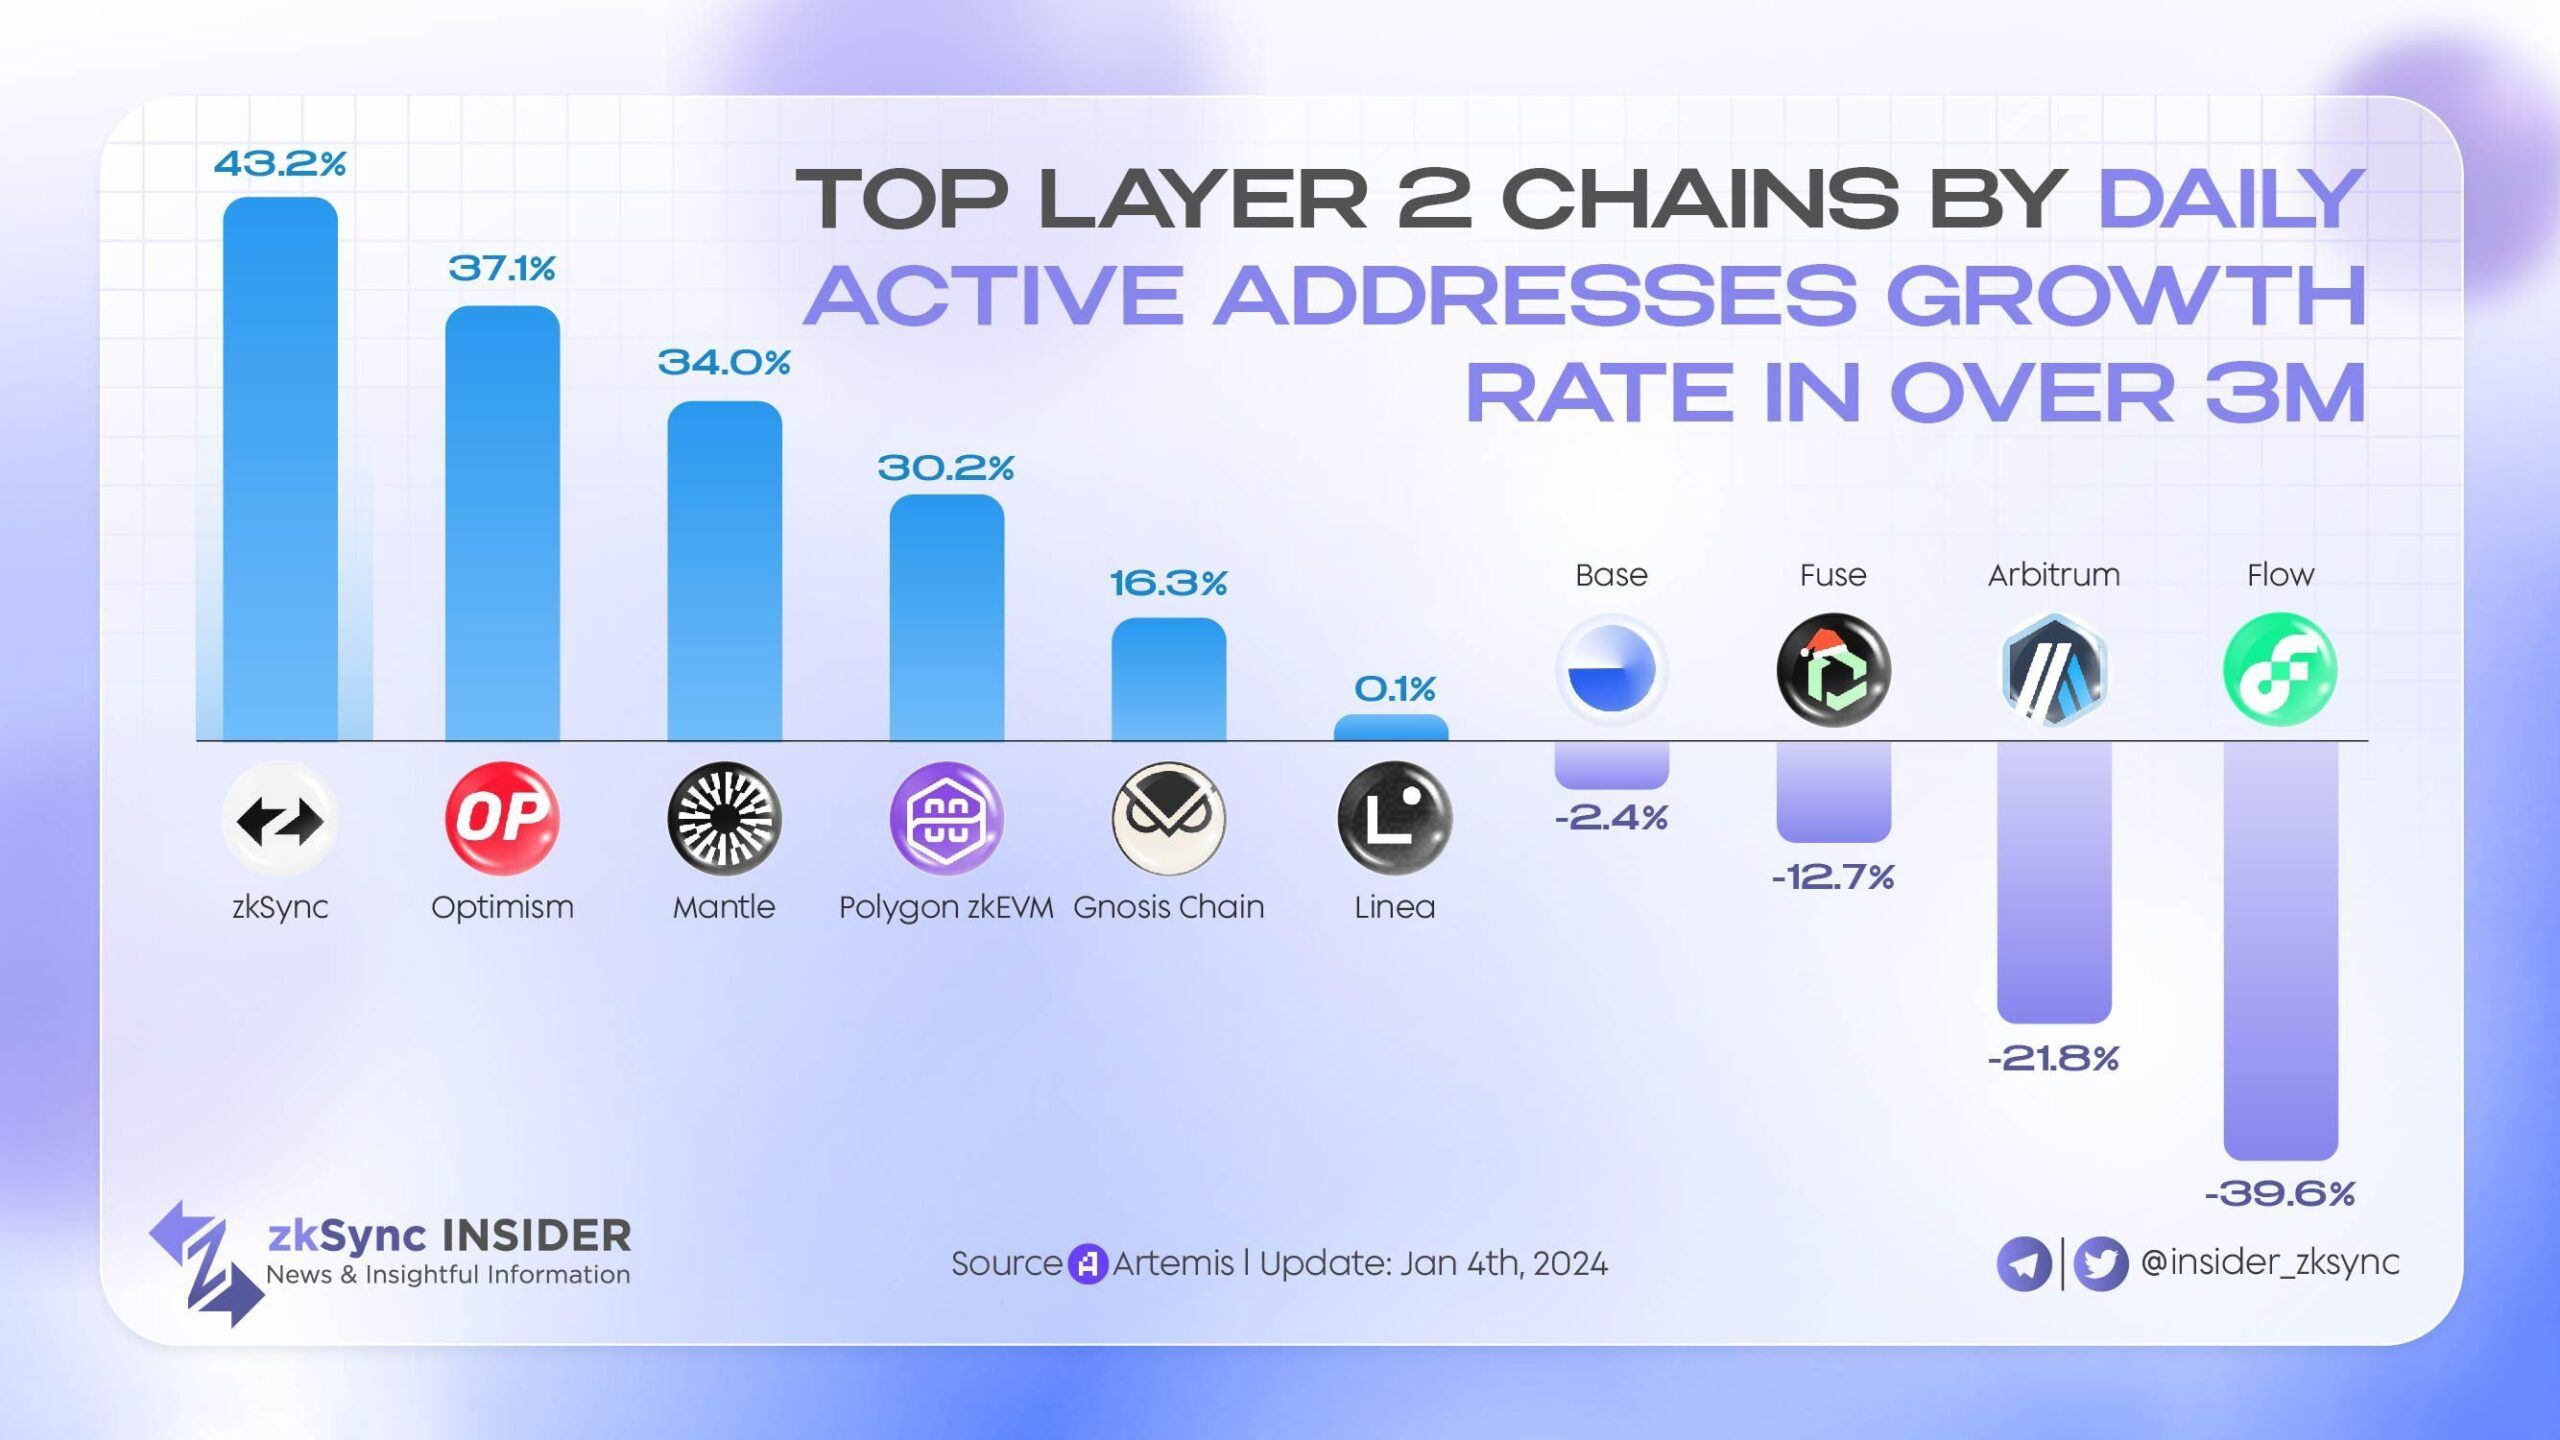 Các Layer 2 được xếp hạng theo tăng trưởng địa chỉ hoạt động hằng ngày. Nguồn: @insider_zksync.